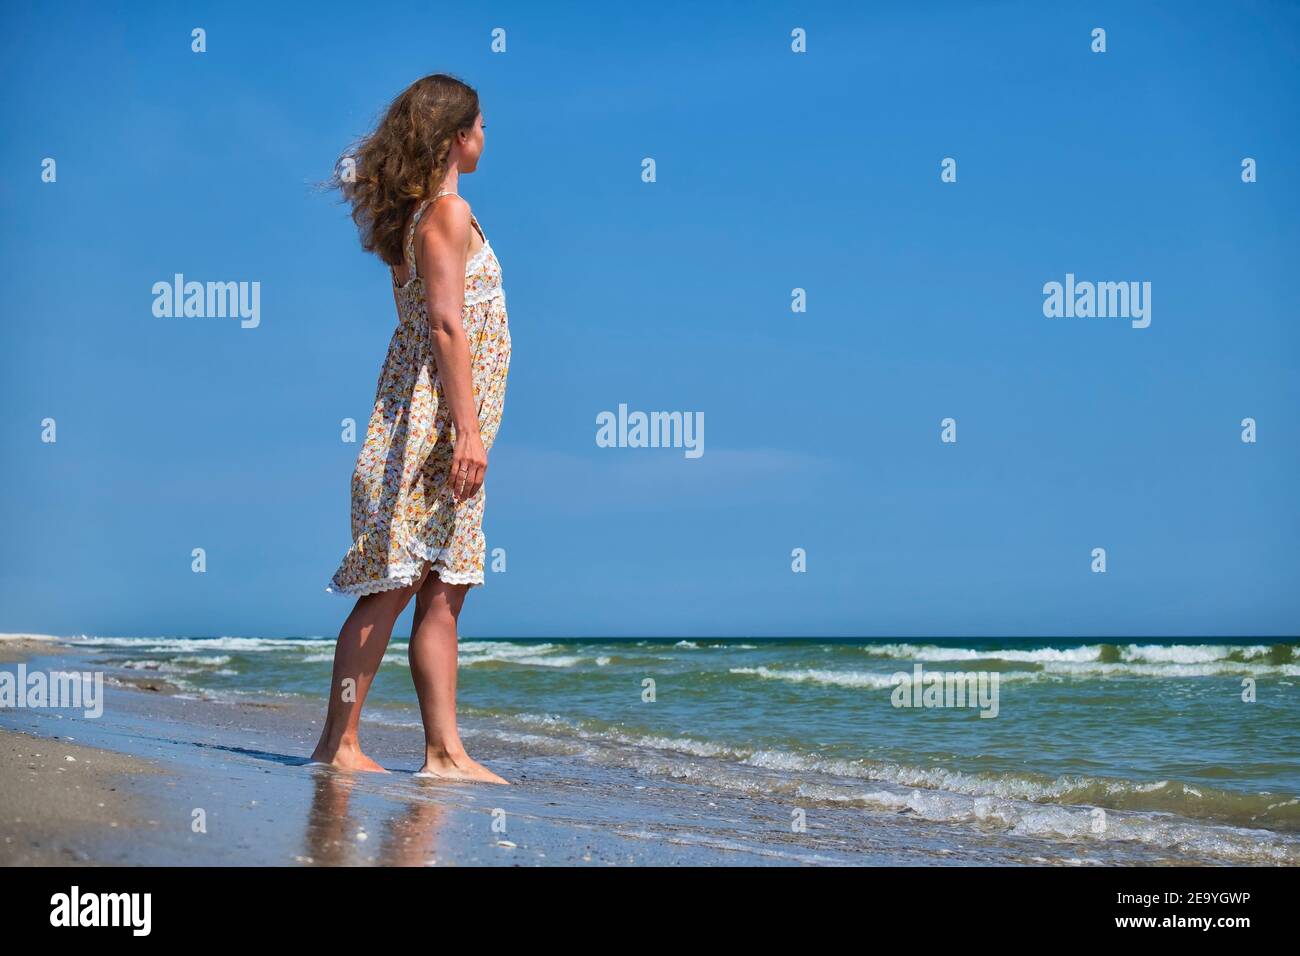 Une jeune fille dans une fleur de sundress se tient sur le bord de mer et examine la distance Banque D'Images